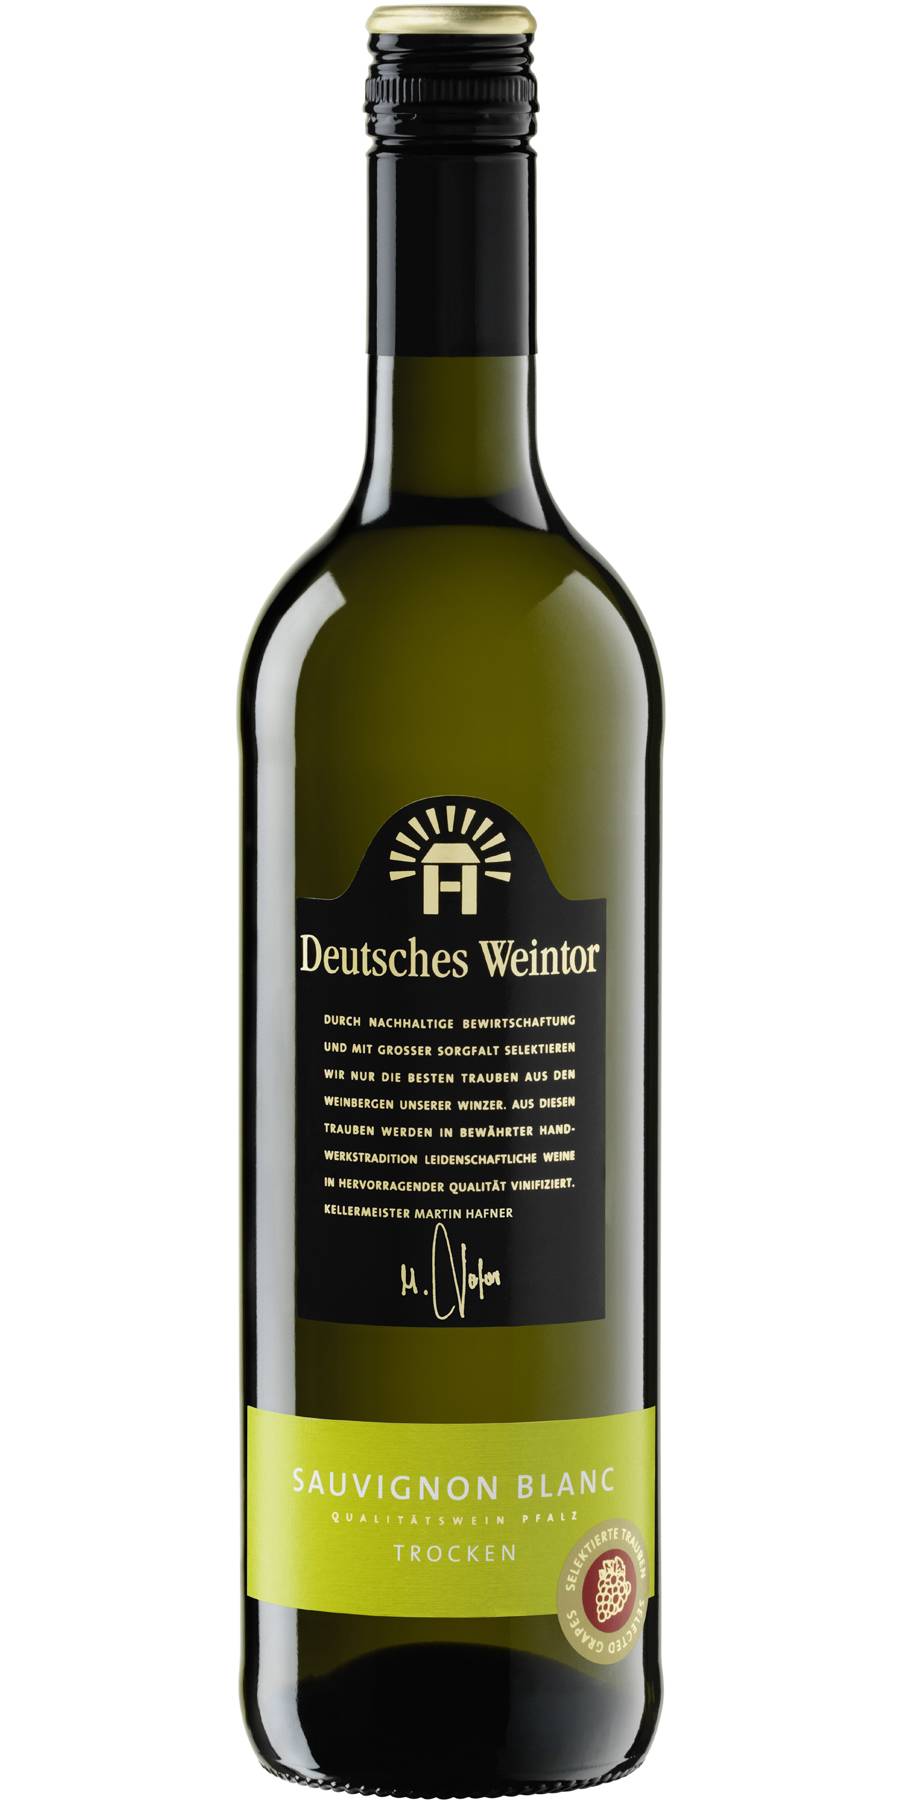 Deutsches Weintor Pfalz Sauvignon Blanc trocken